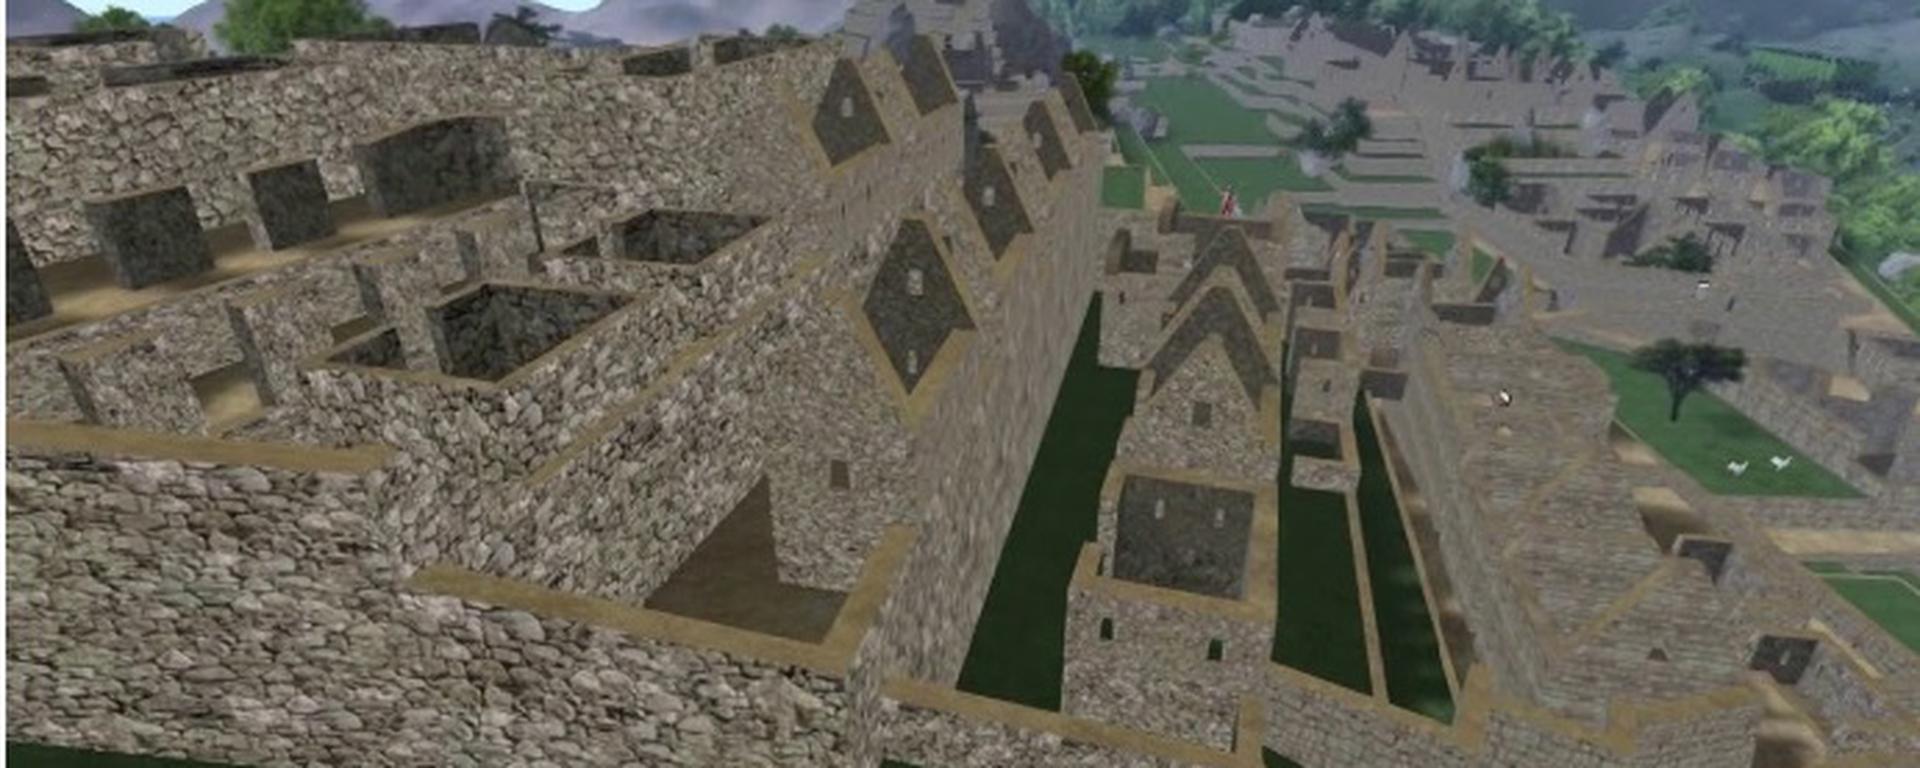 La historia de cómo Machu Picchu llegó al metaverso hace 13 años